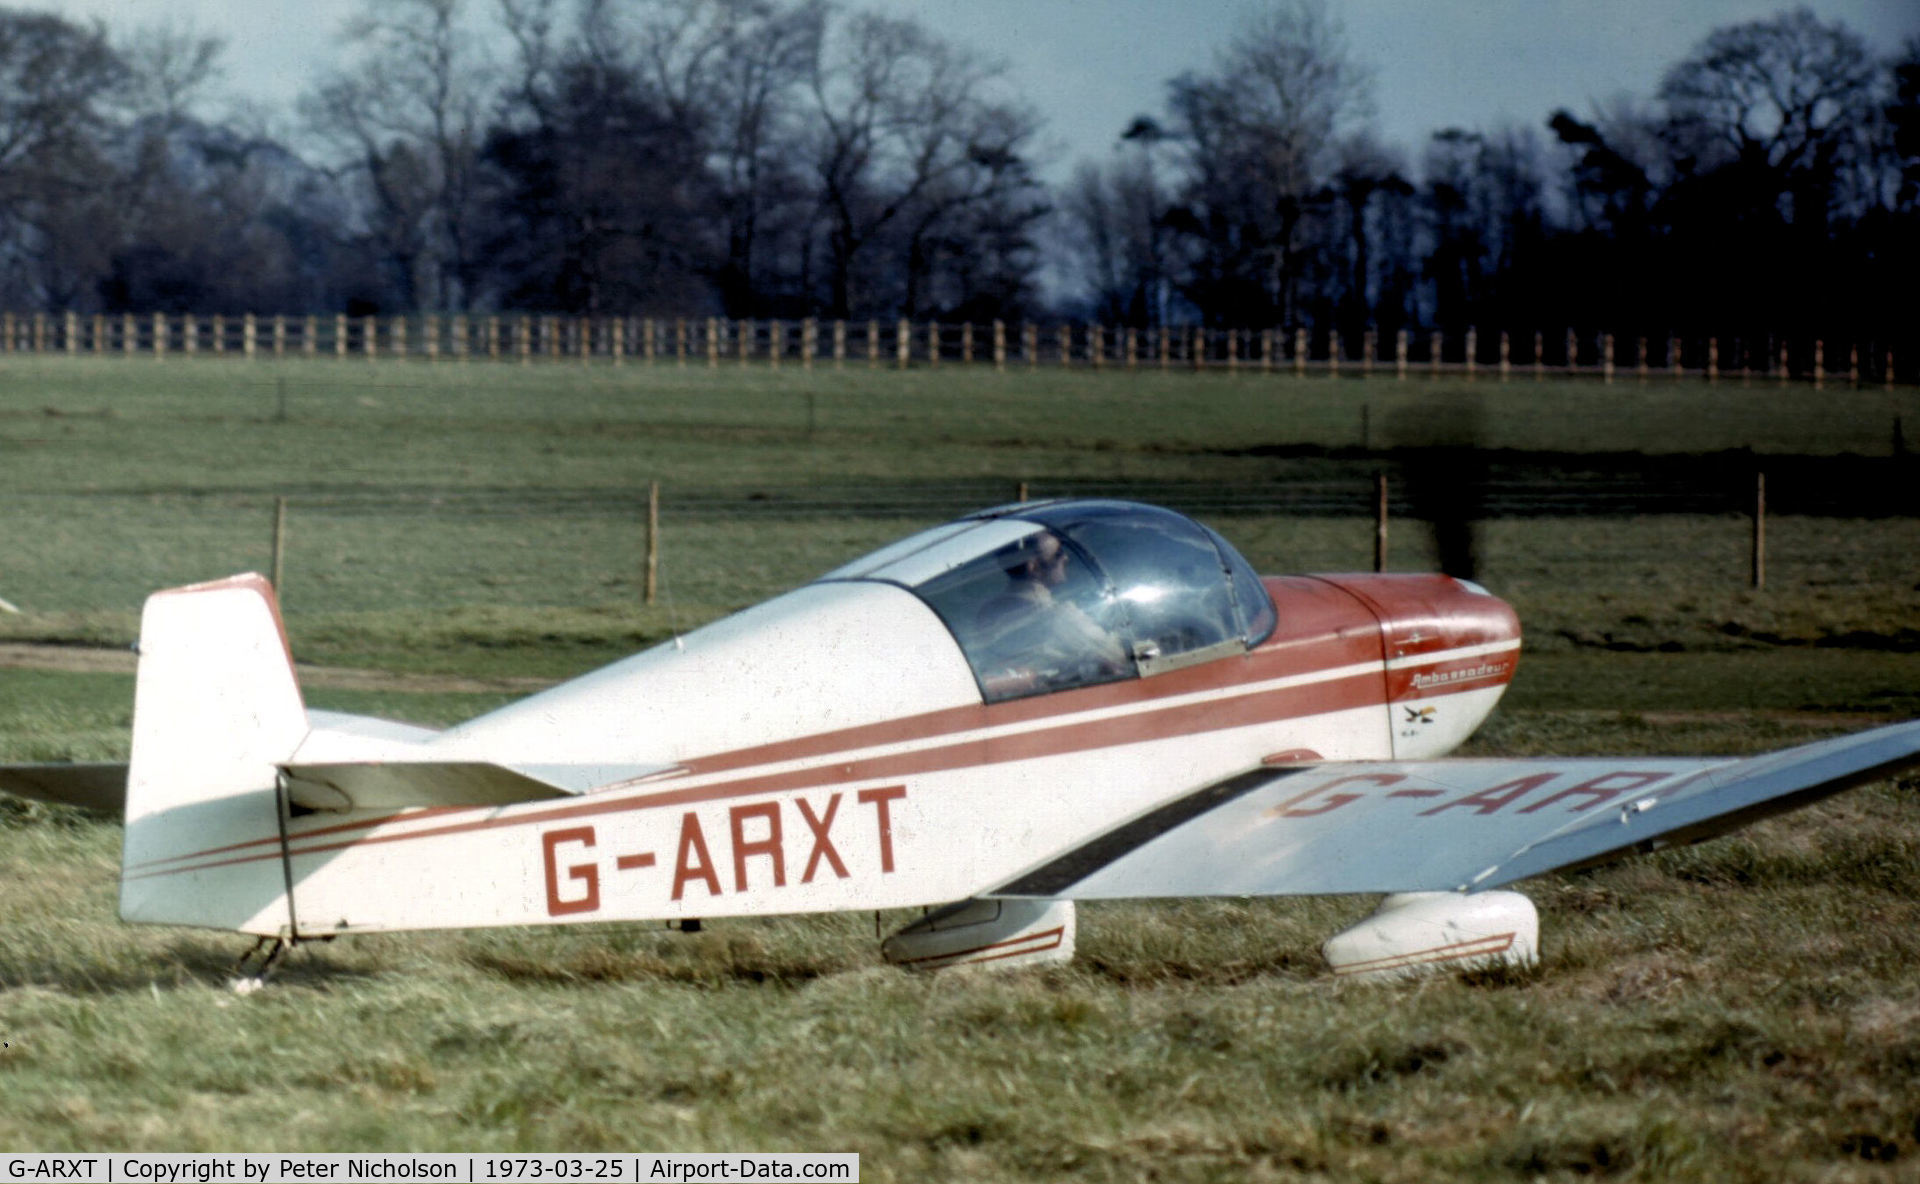 G-ARXT, 1962 SAN Jodel DR-1050 Ambassadeur C/N 355, Jodel Ambassadeur as seen at Old Warden Airshow in the Spring of 1973.